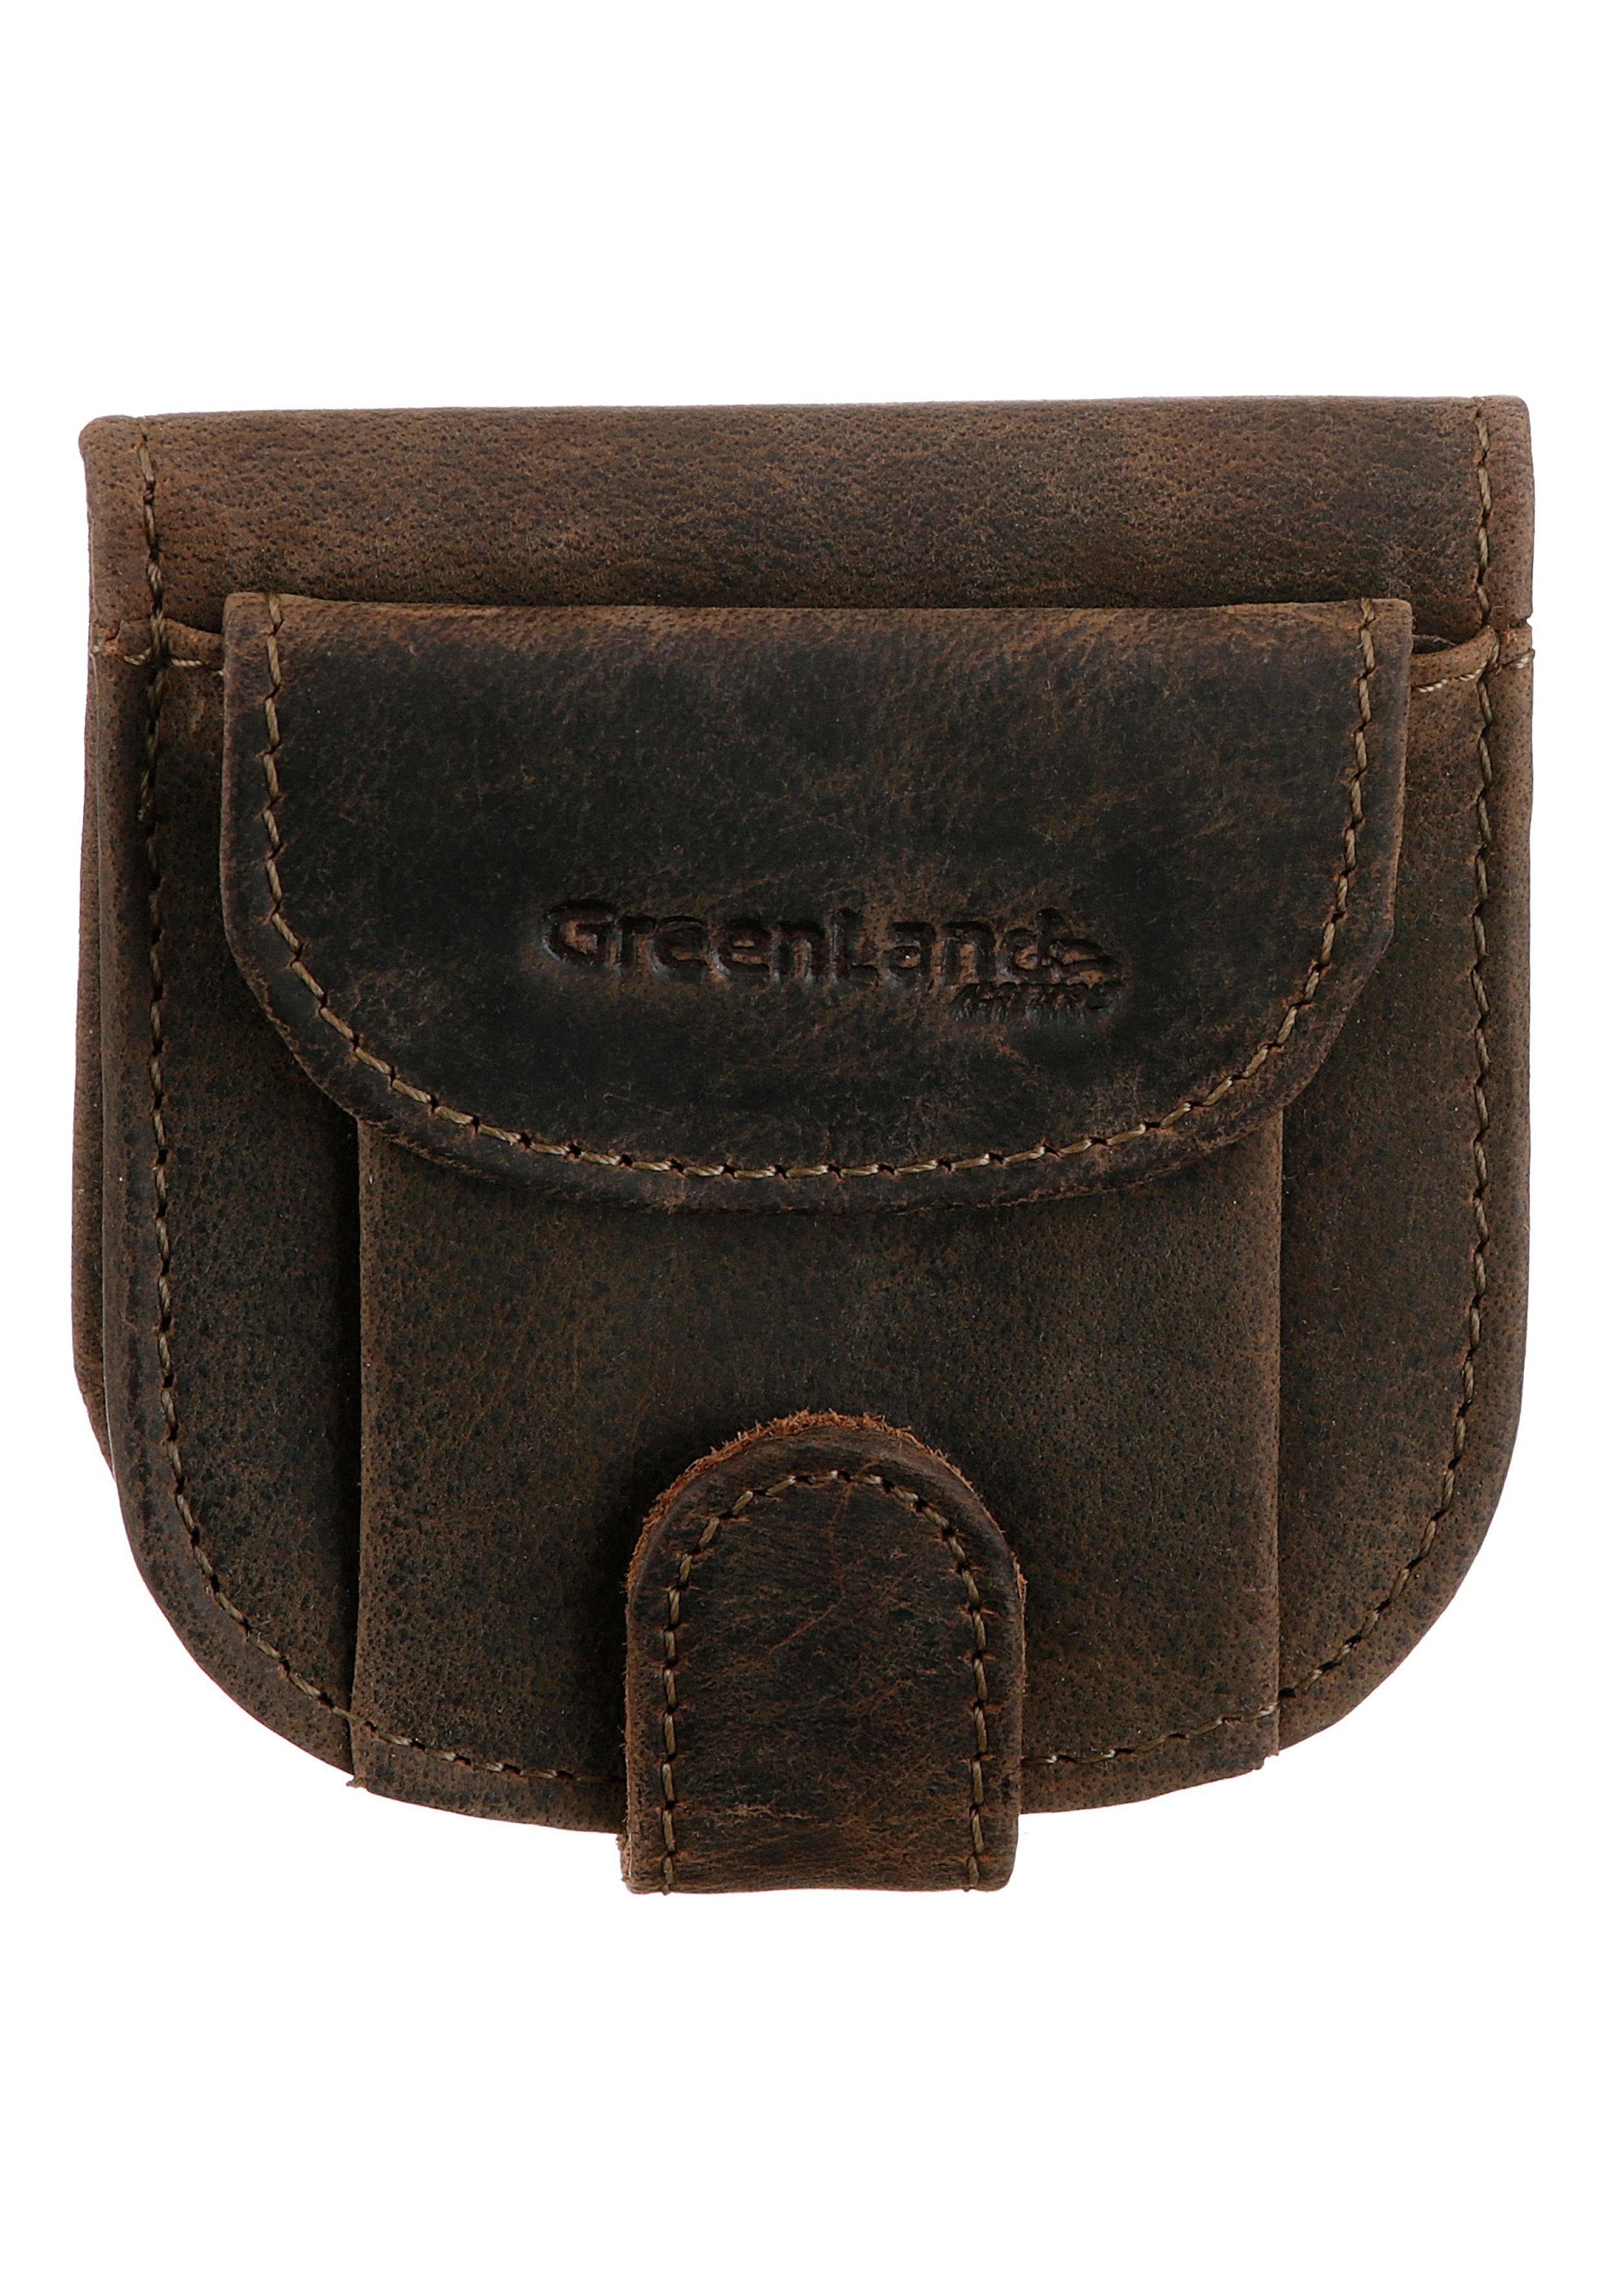 GreenLand Nature Geldbörse Stone, aus echtem Leder, im kleinen Format | Geldbörsen